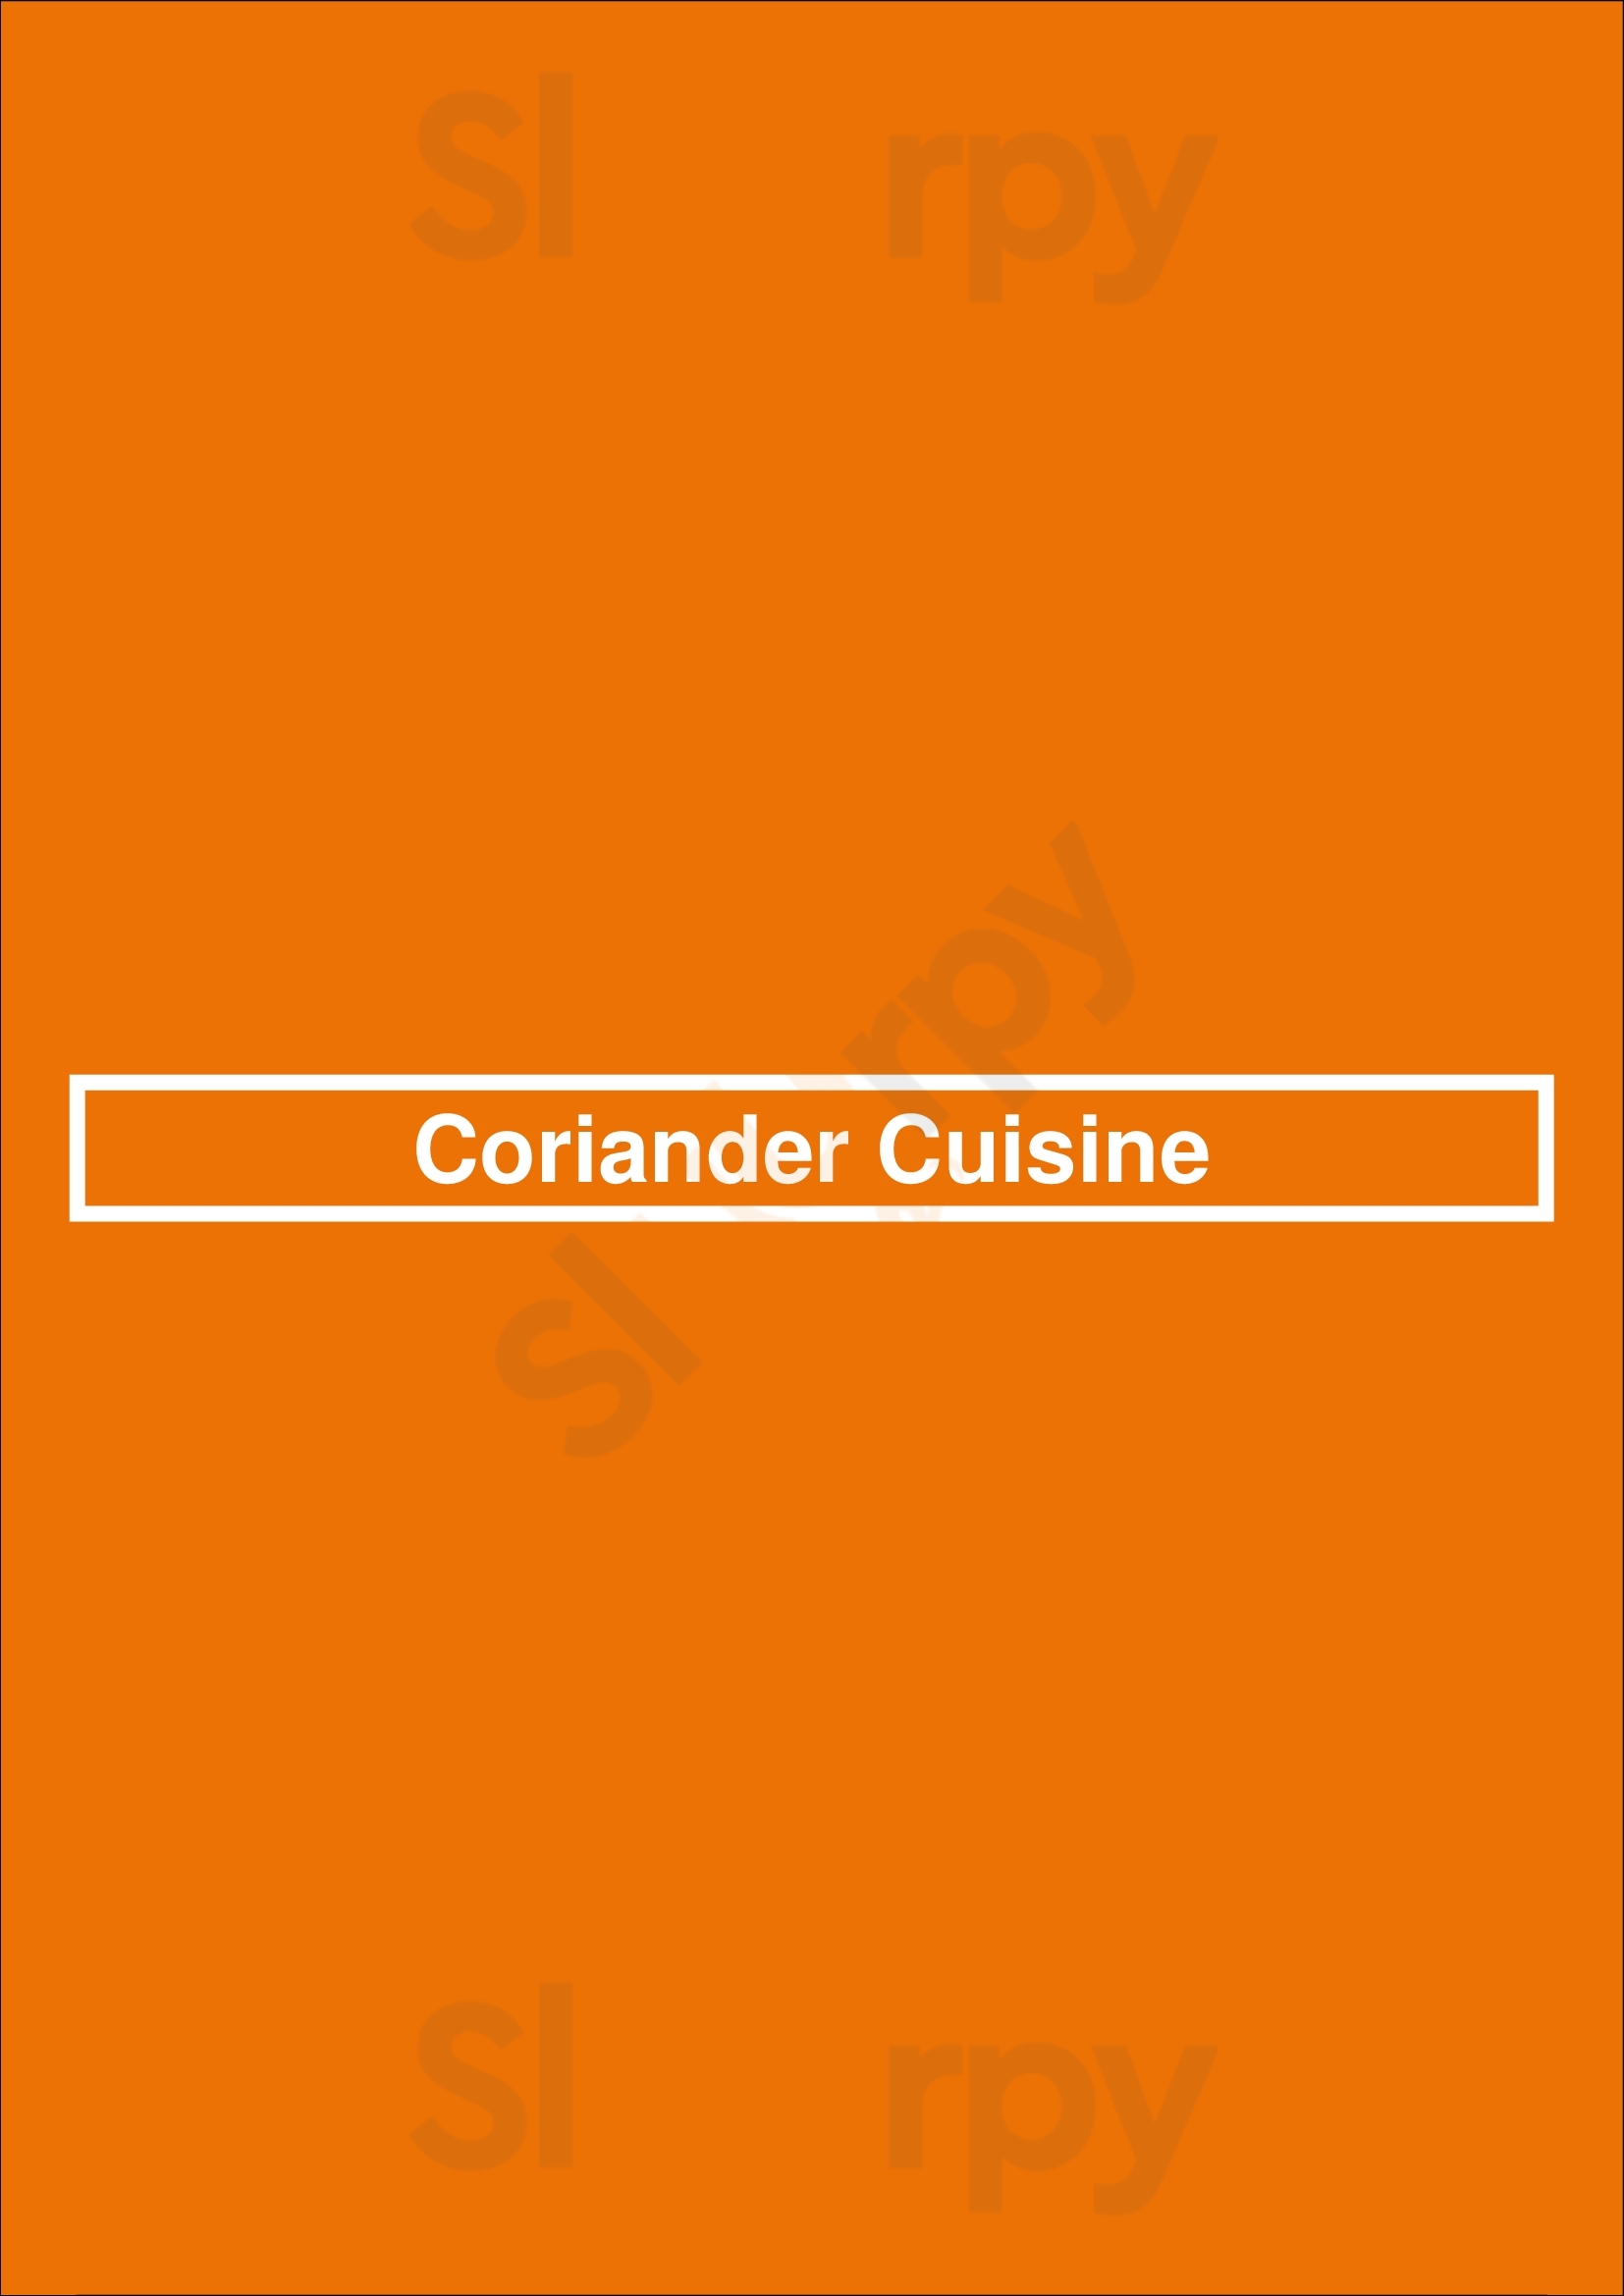 Coriander Cuisine Edmonton Menu - 1